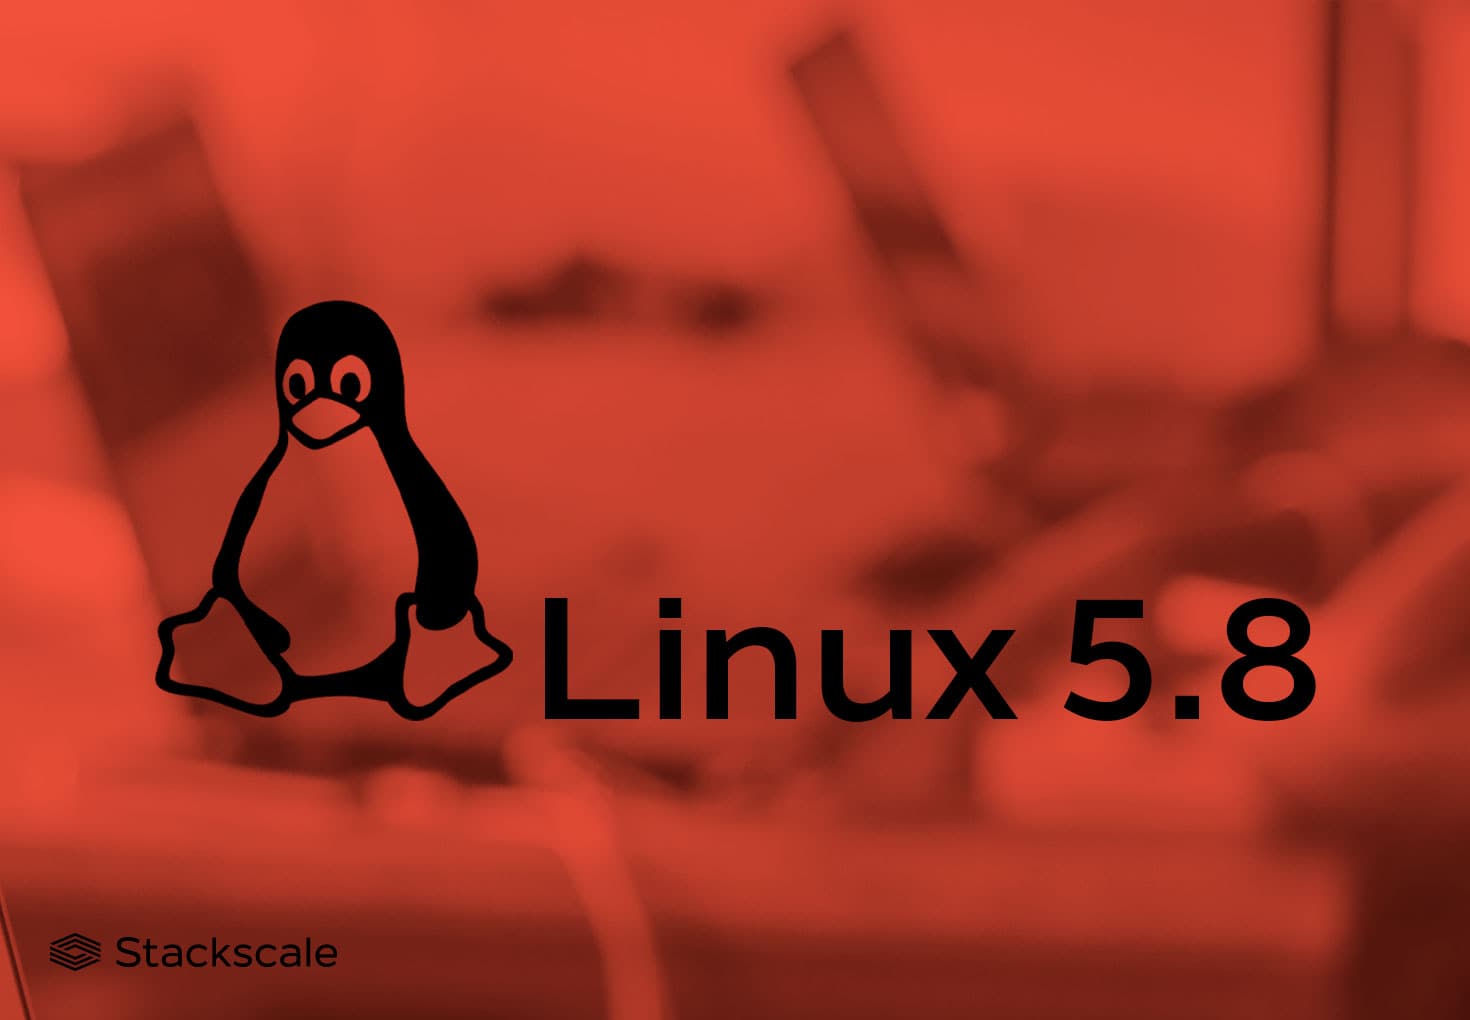 Linux kernel 5.8